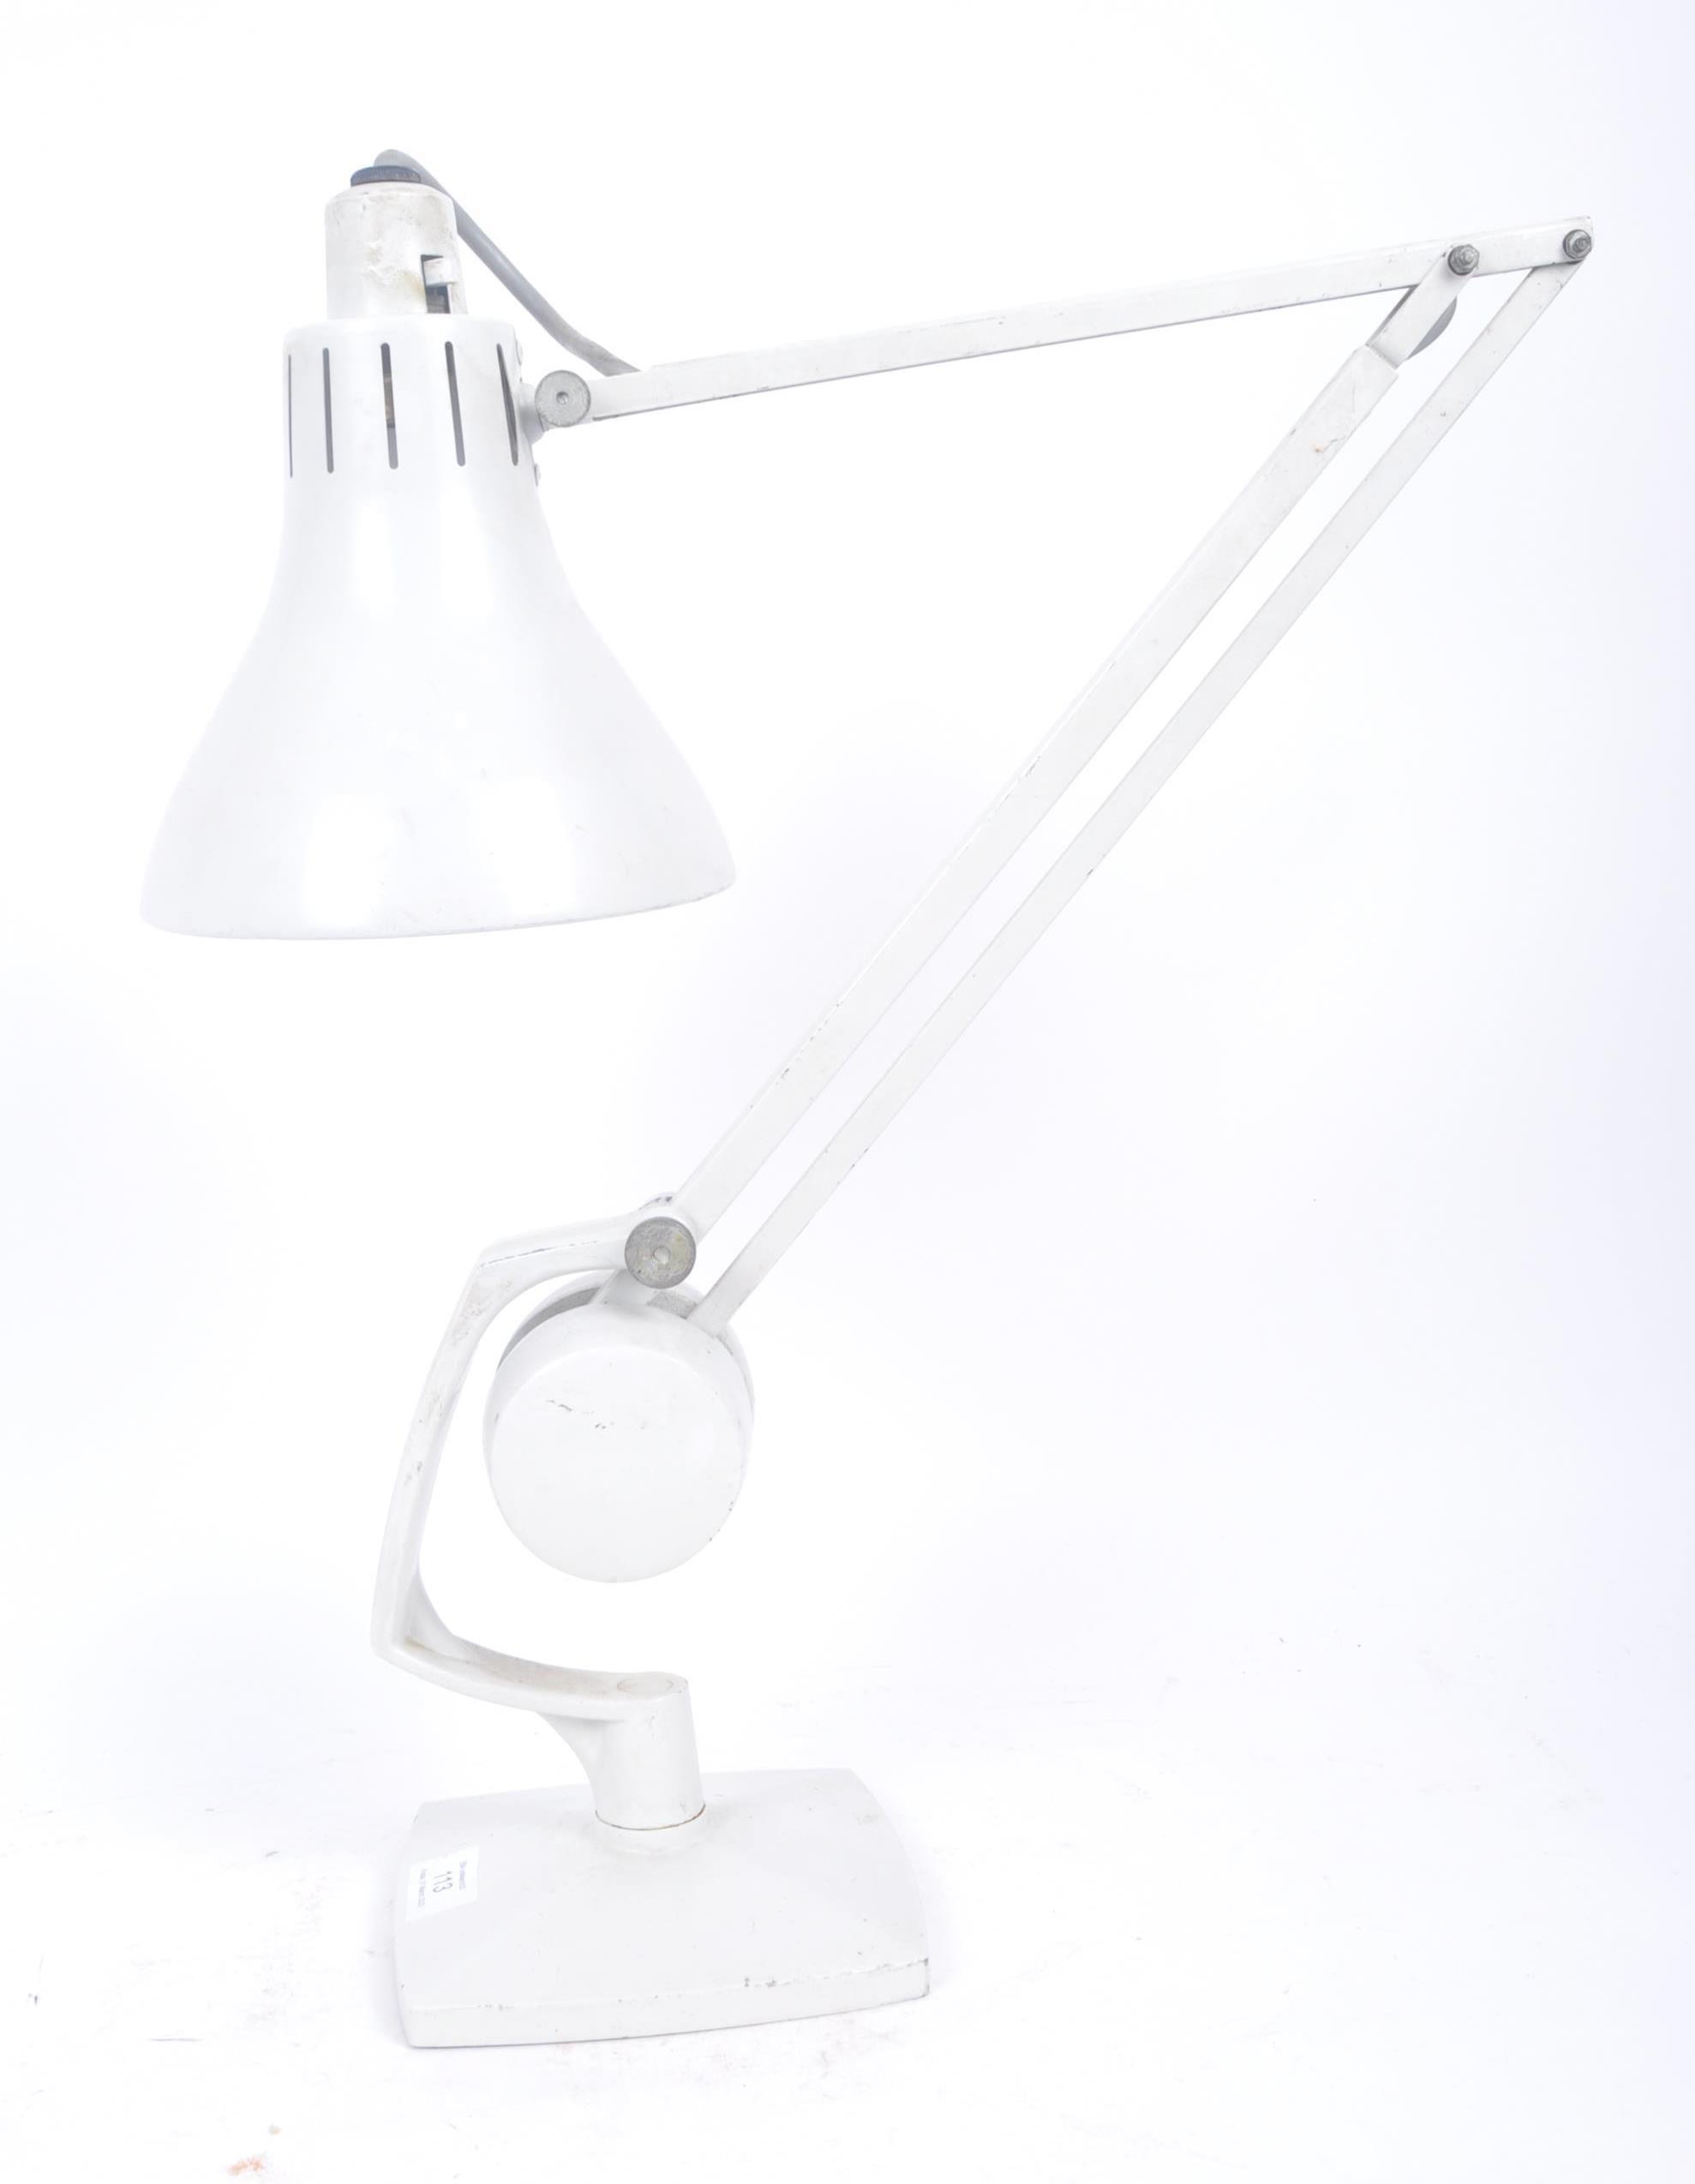 HADRILL & HORSTMANN - MID CENTURY ANGLEPOISE DESK LAMP